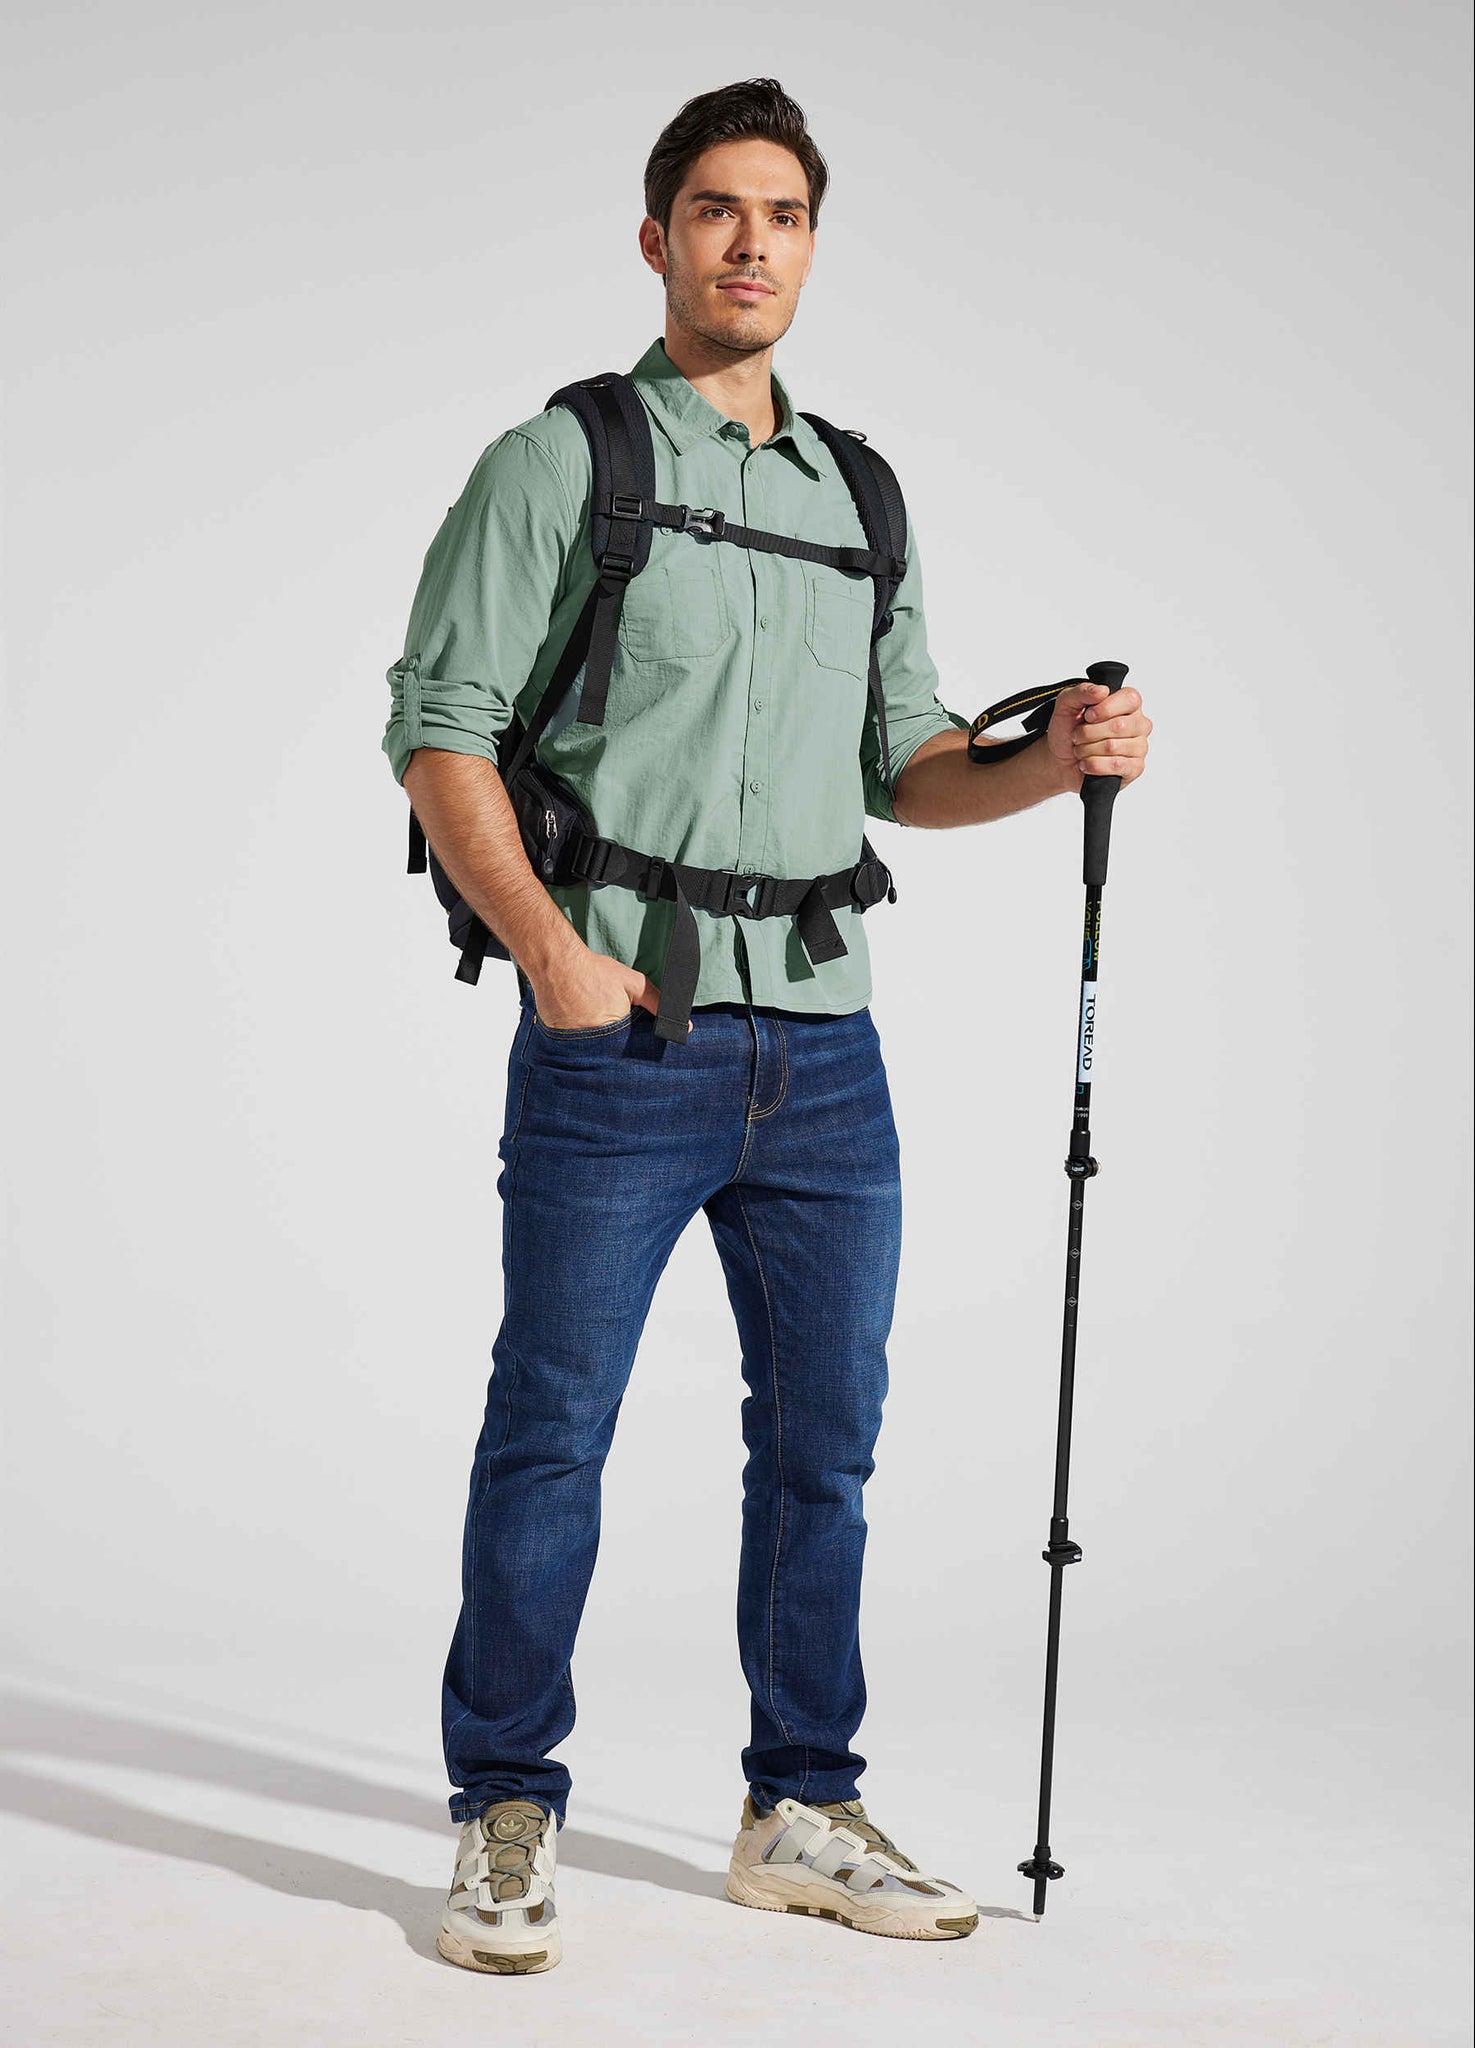 Men's Fishing Shirt Long Sleeve Hiking Shirt